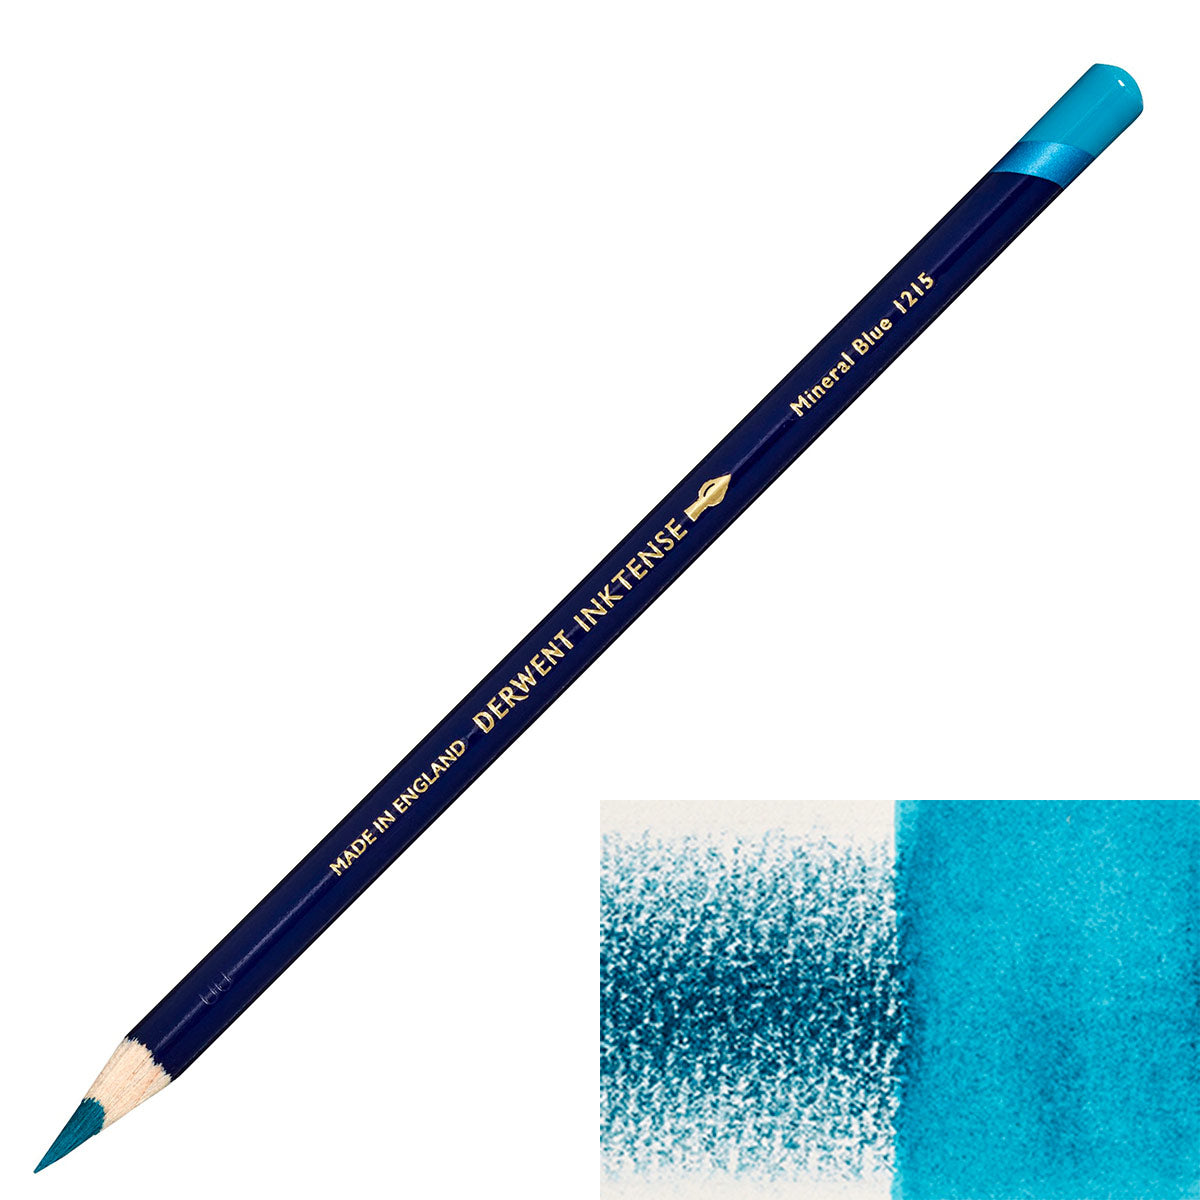 Derwent - Inktense Pencil - Mineral Blue 1215